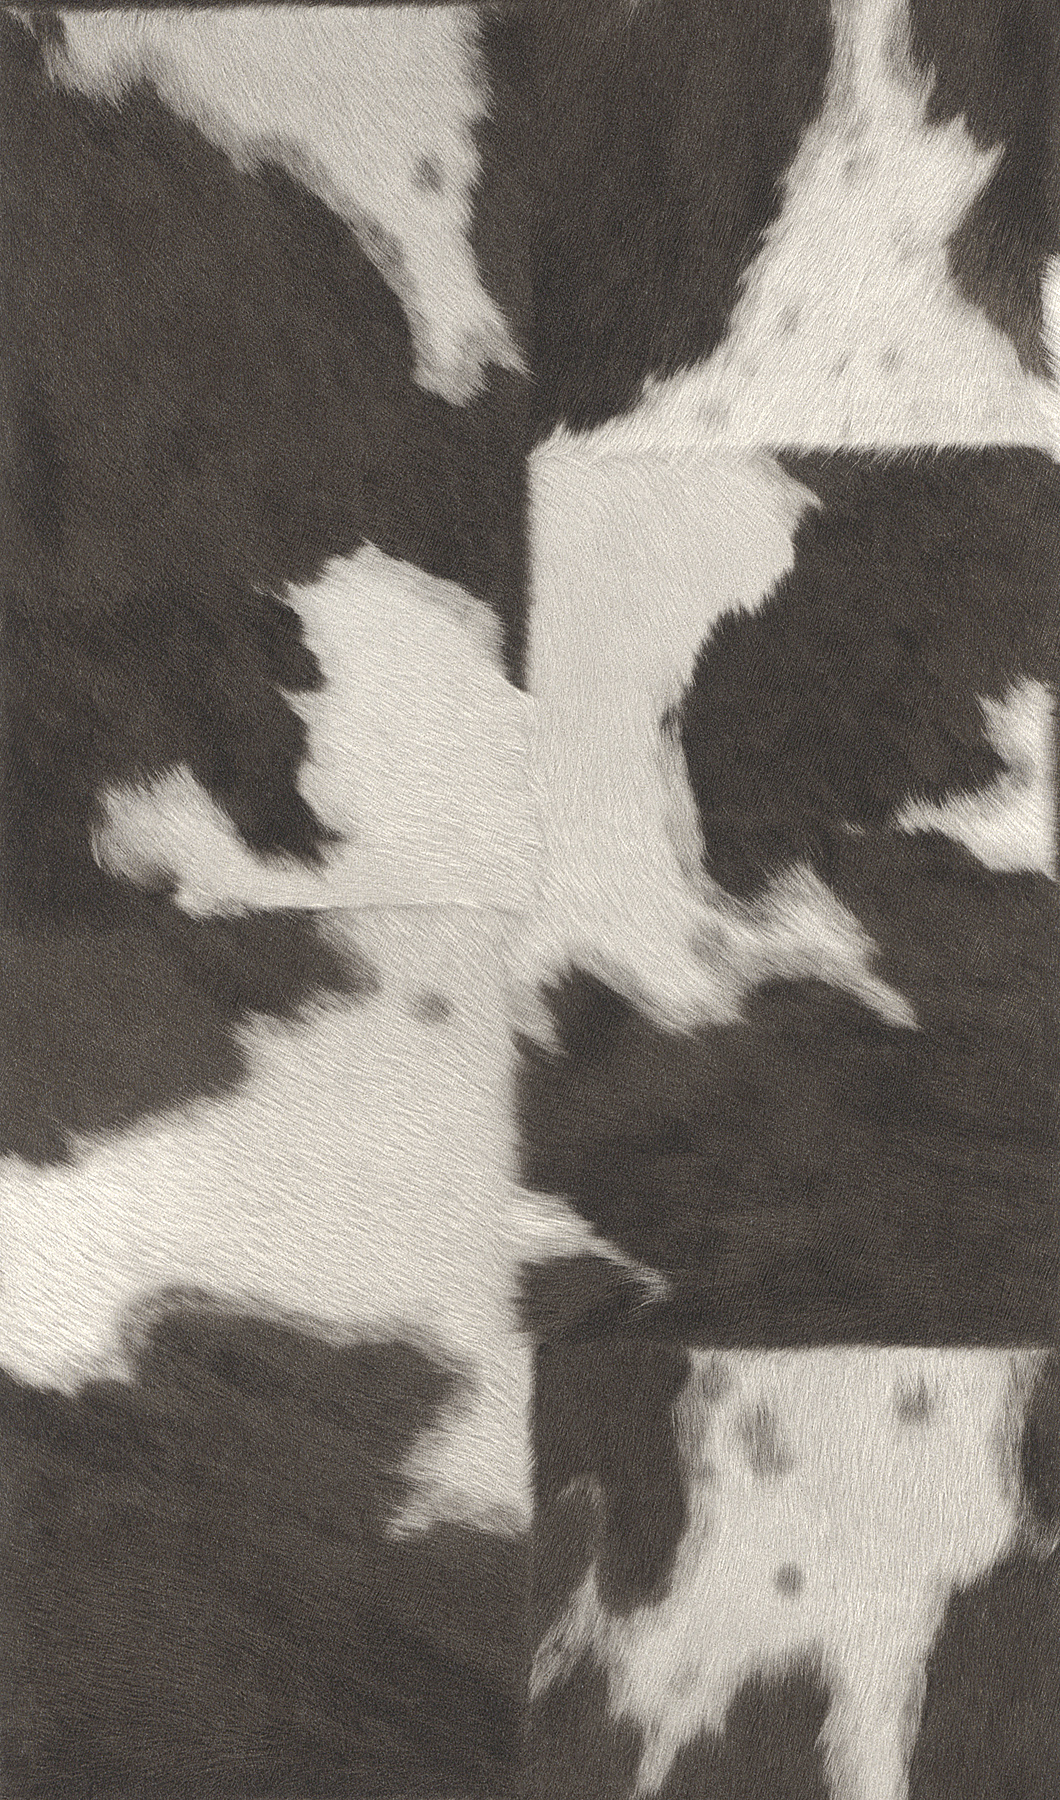 Fekete-fehér állatszőr mintás tapéta